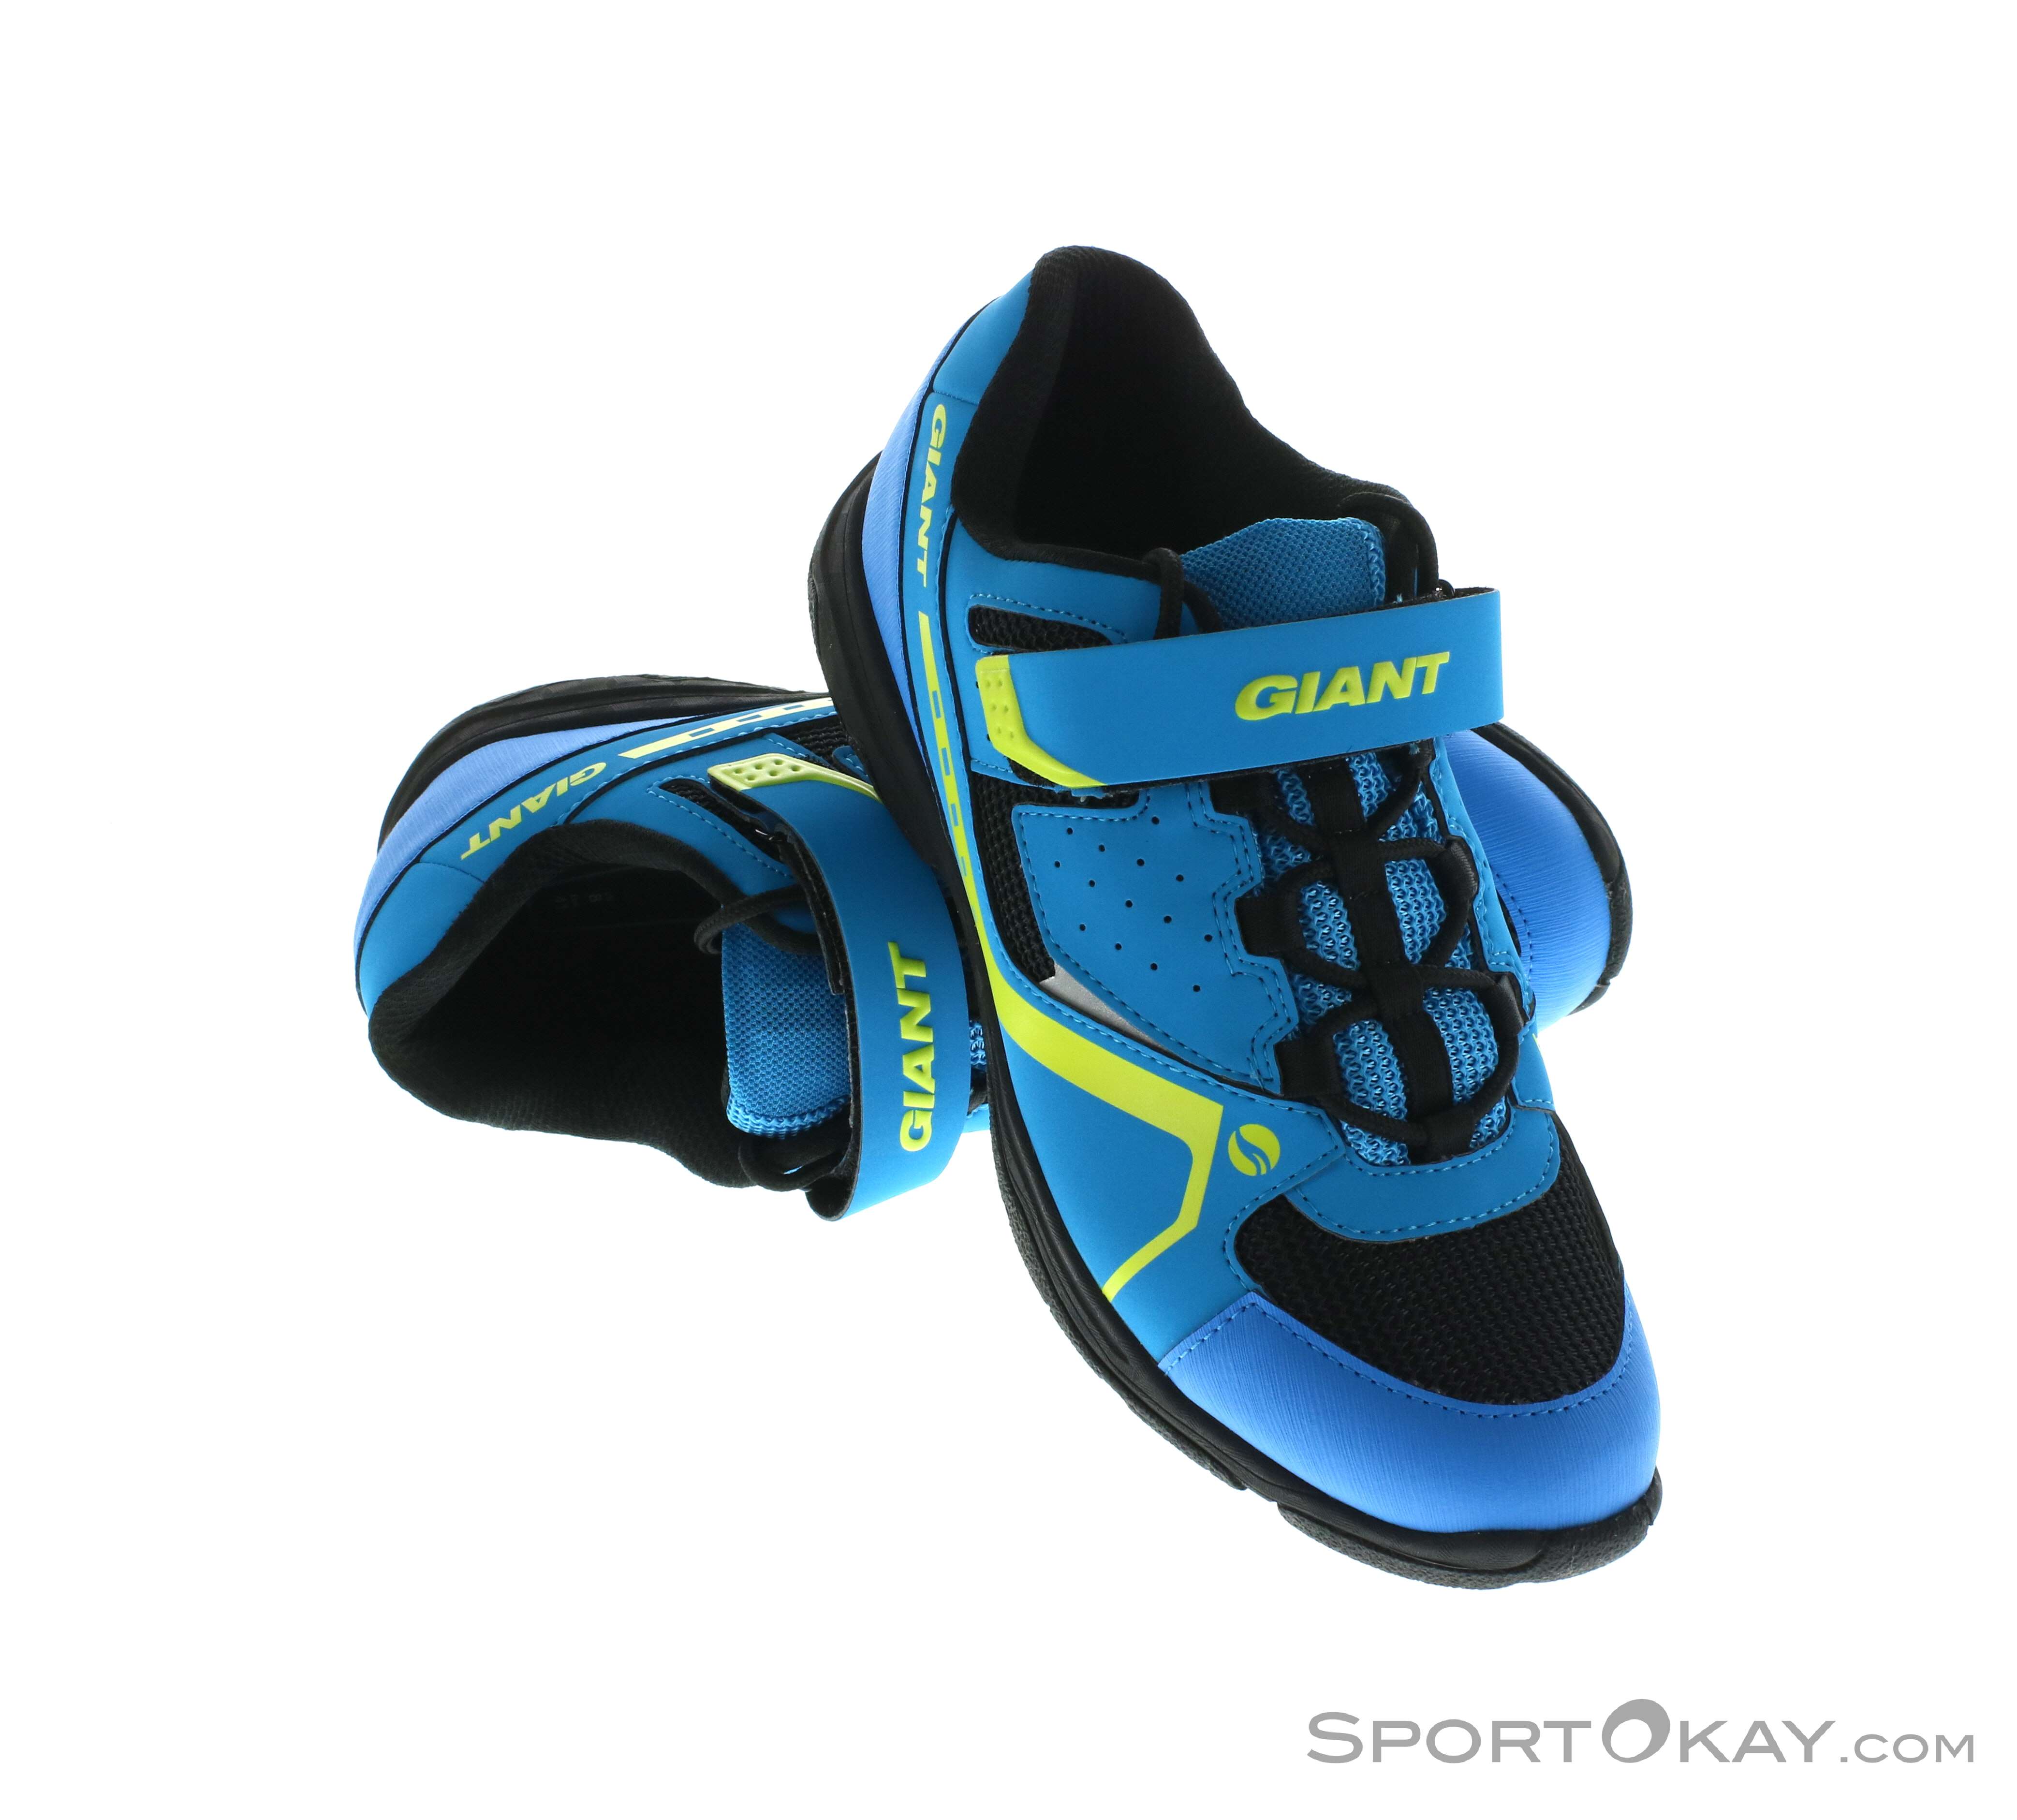 Zapatillas Giant Sojourn nuevas Uomo Scarpe Scarpe sportive Altre scarpe sportive GIANT Altre scarpe sportive 